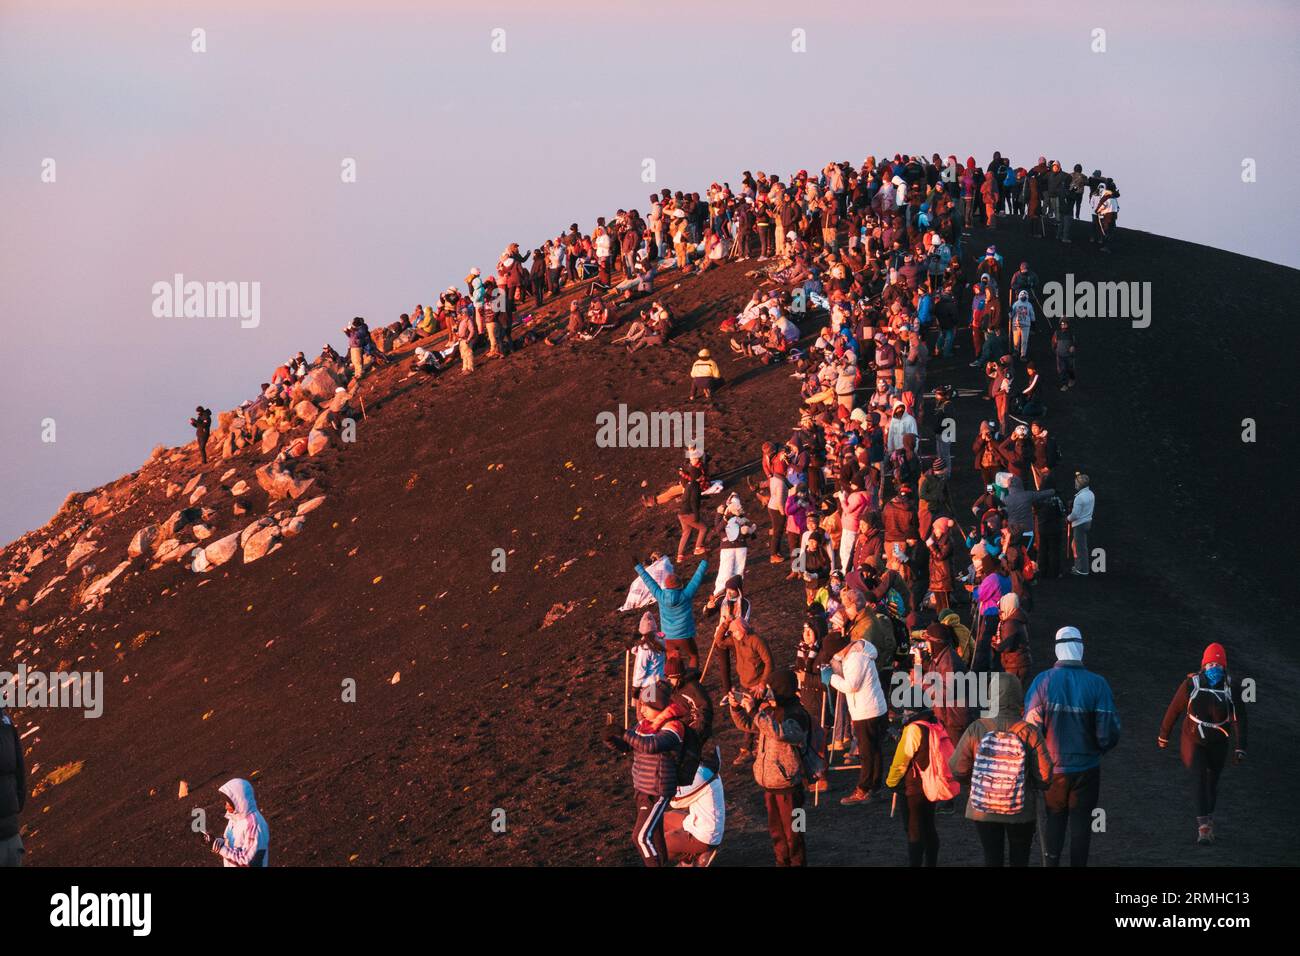 Dutzende von Touristen drängen sich auf den Gipfel des ruhenden Acatenango-Vulkans in Guatemala, um den benachbarten und aktiven Fuego-Vulkan bei Sonnenaufgang zu beobachten Stockfoto